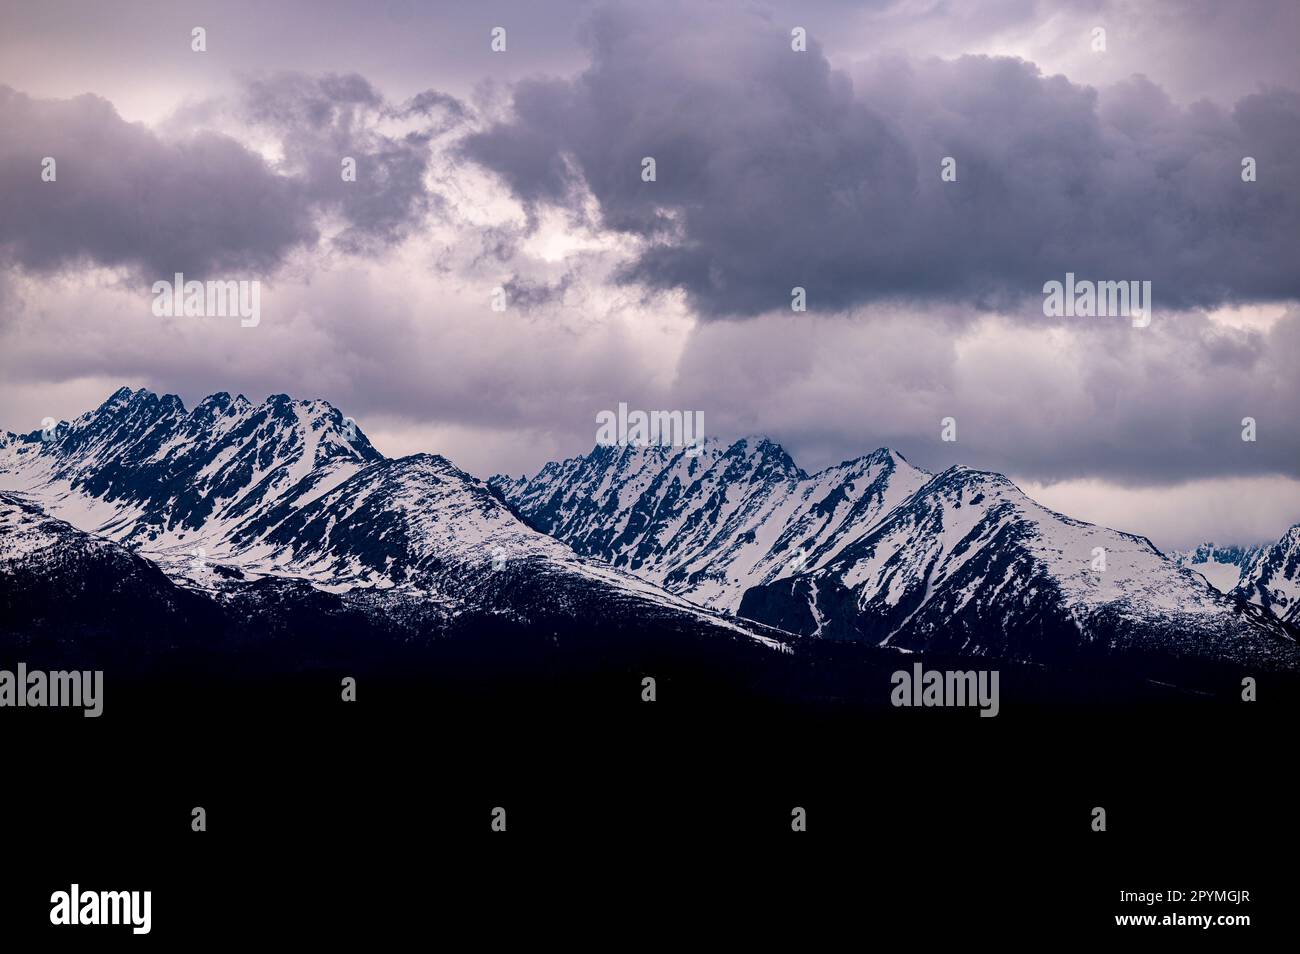 Paysage hivernal nuageux des montagnes Tatra, Slovaquie. Solisko et Satan Peaks. Banque D'Images